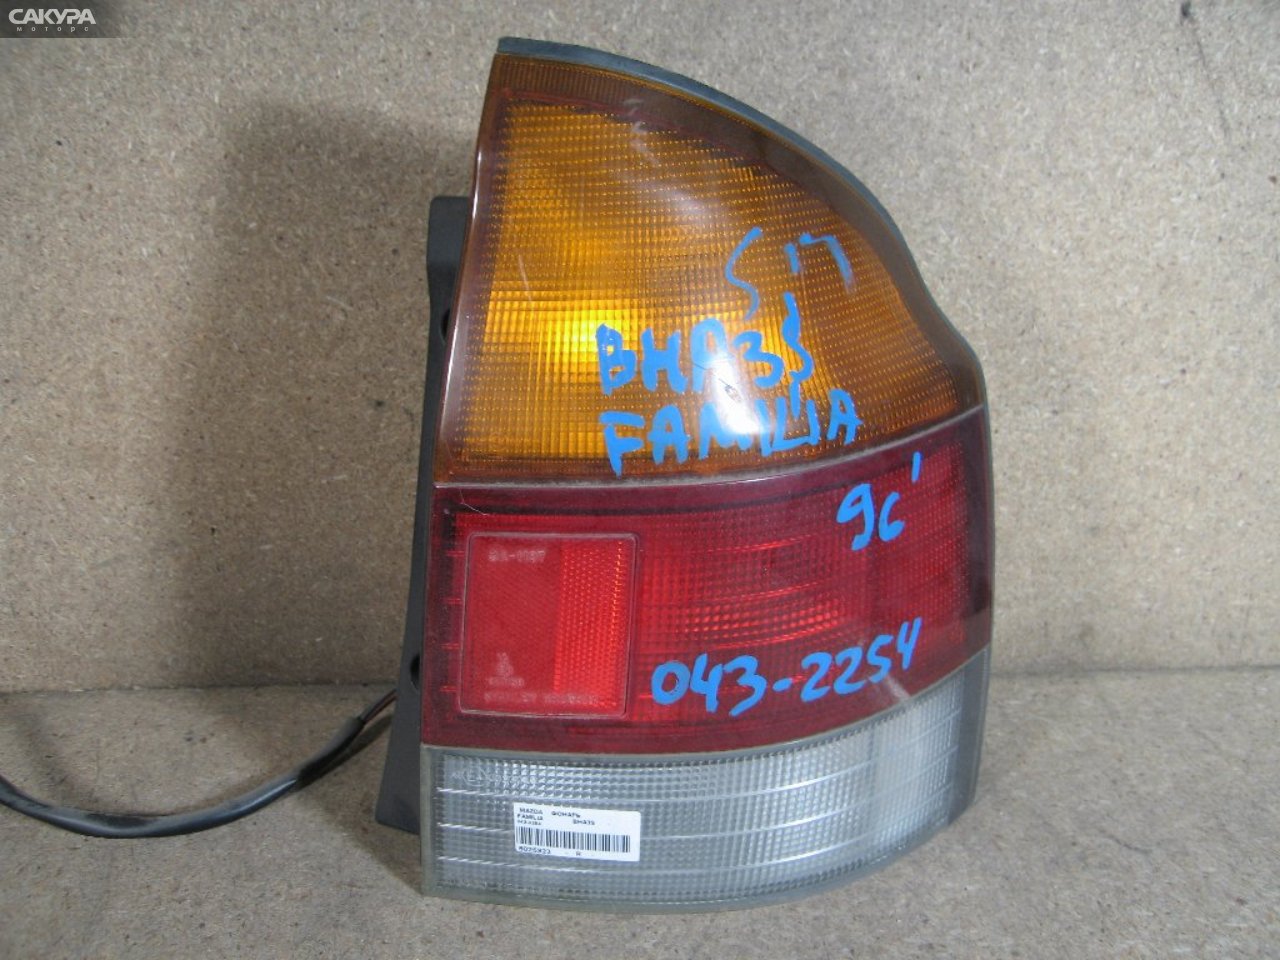 Фонарь стоп-сигнала правый Mazda Familia BHA3S 043-2254: купить в Сакура Абакан.